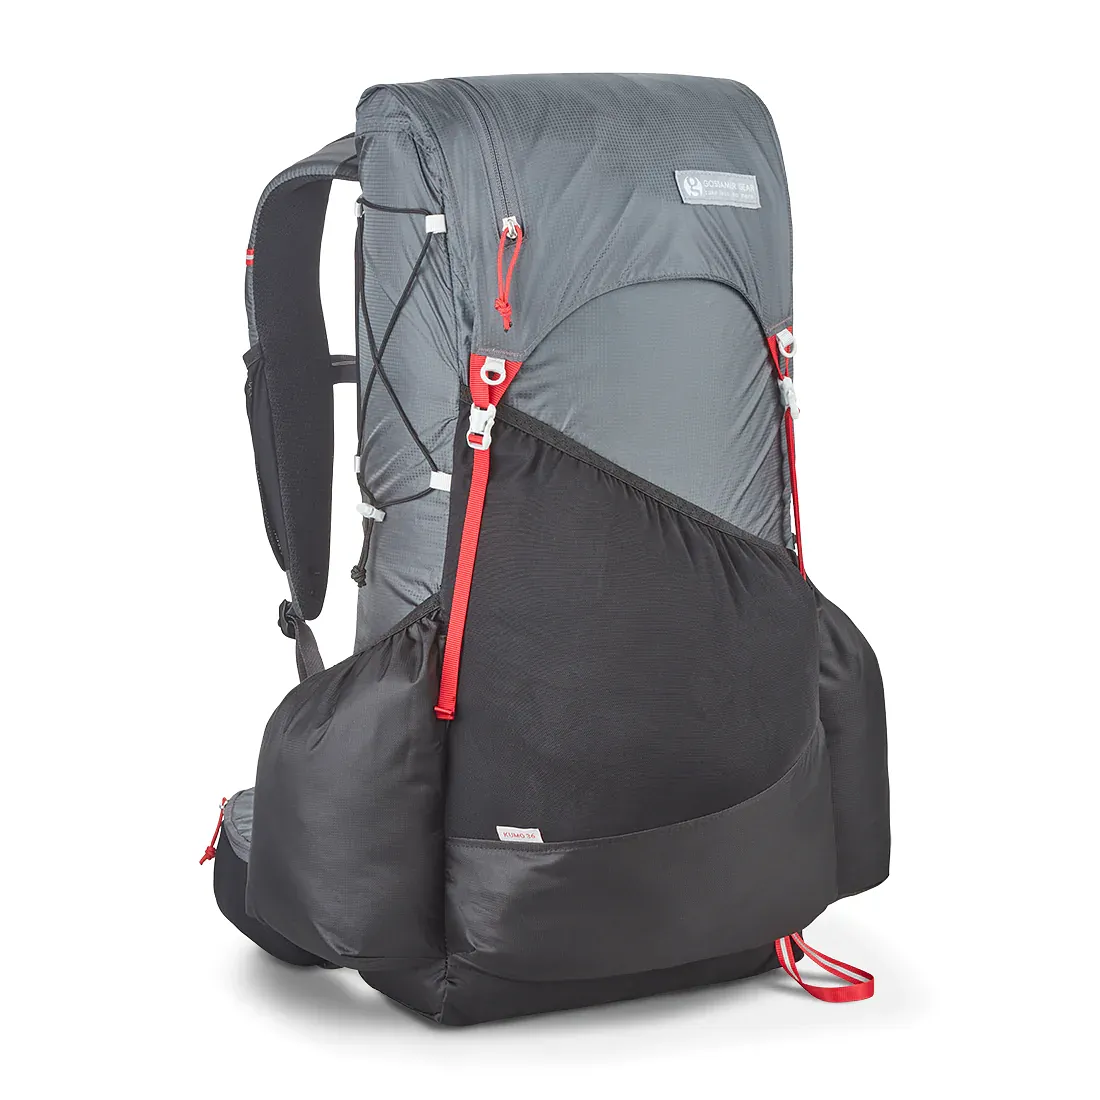 Gossamer Gear Kumo 36 Superlight Ultralight Backpack